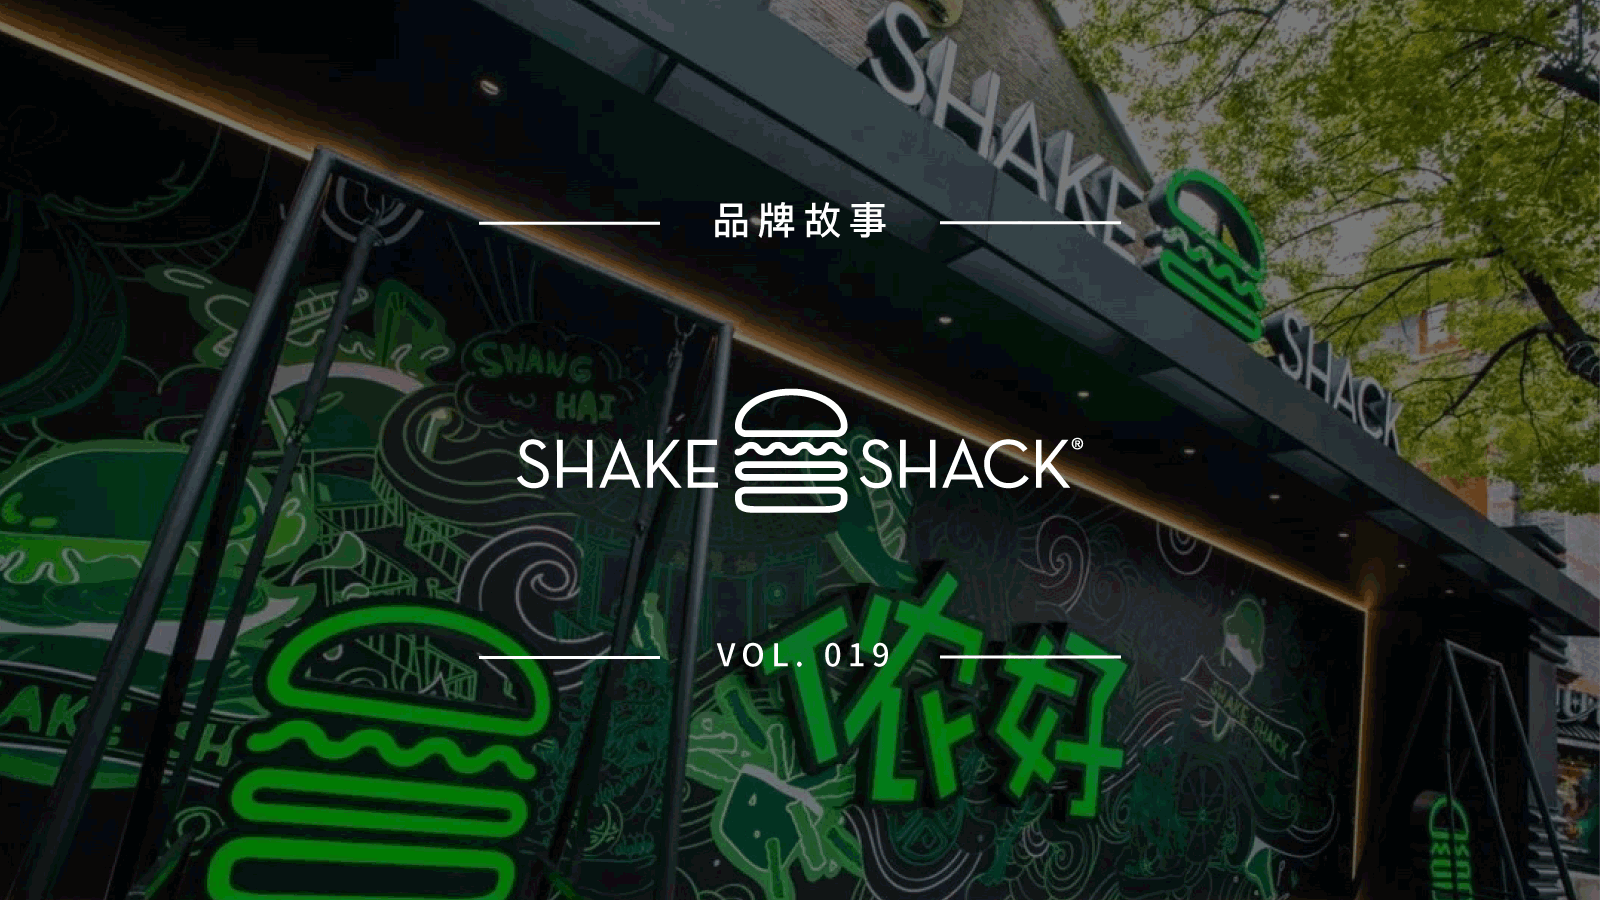 1 月 24 日在上海新天地开业的 Shake Shack 究竟是什么来头？ | 品牌故事